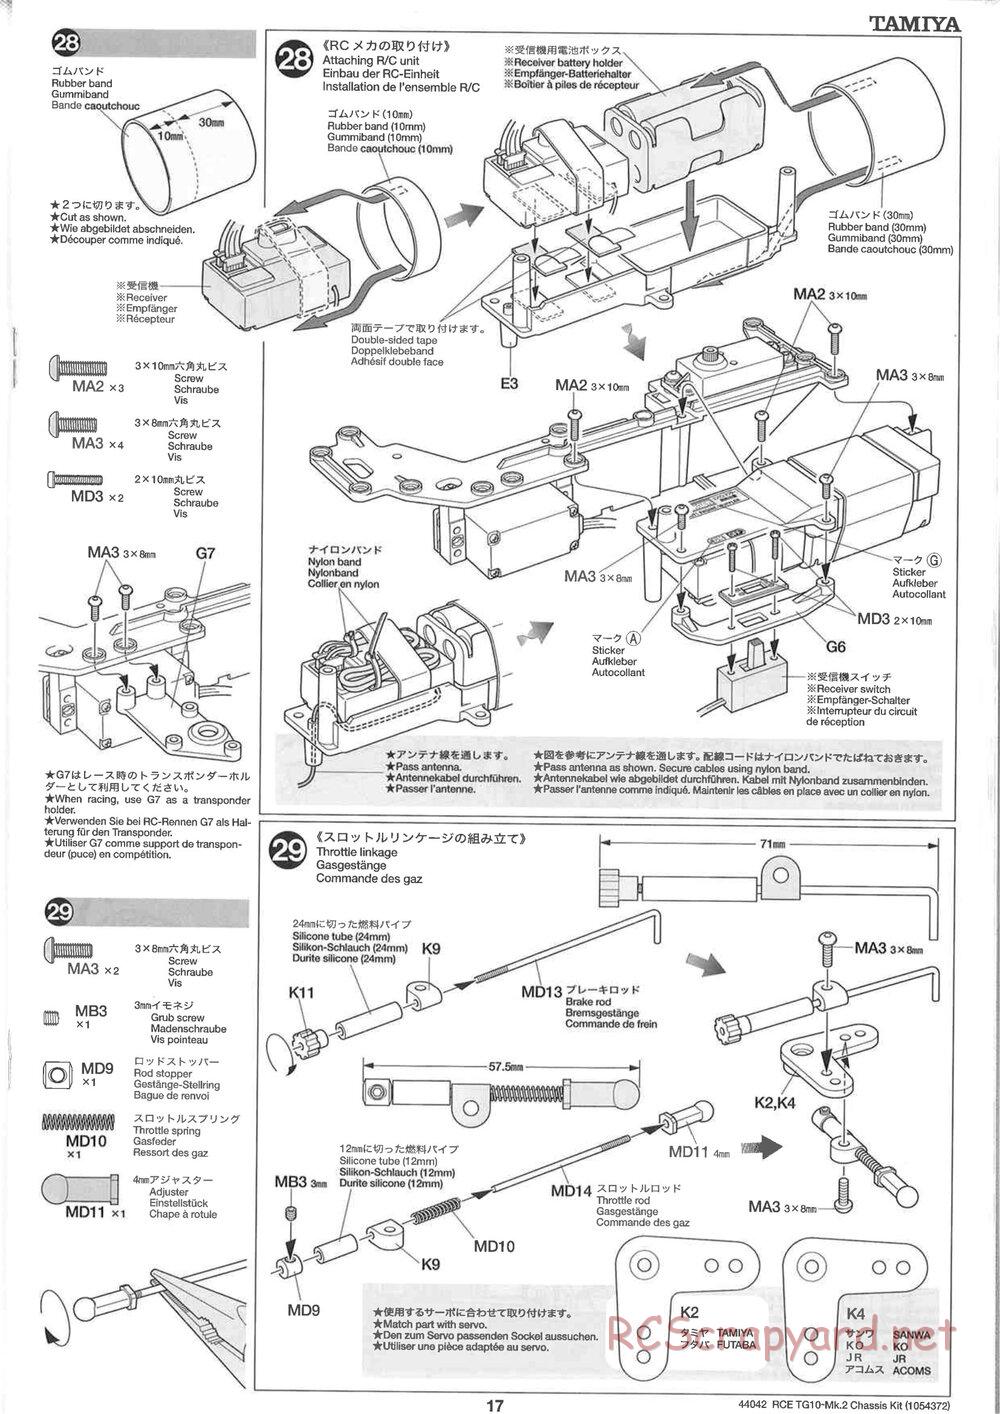 Tamiya - TG10 Mk.2 Chassis - Manual - Page 17